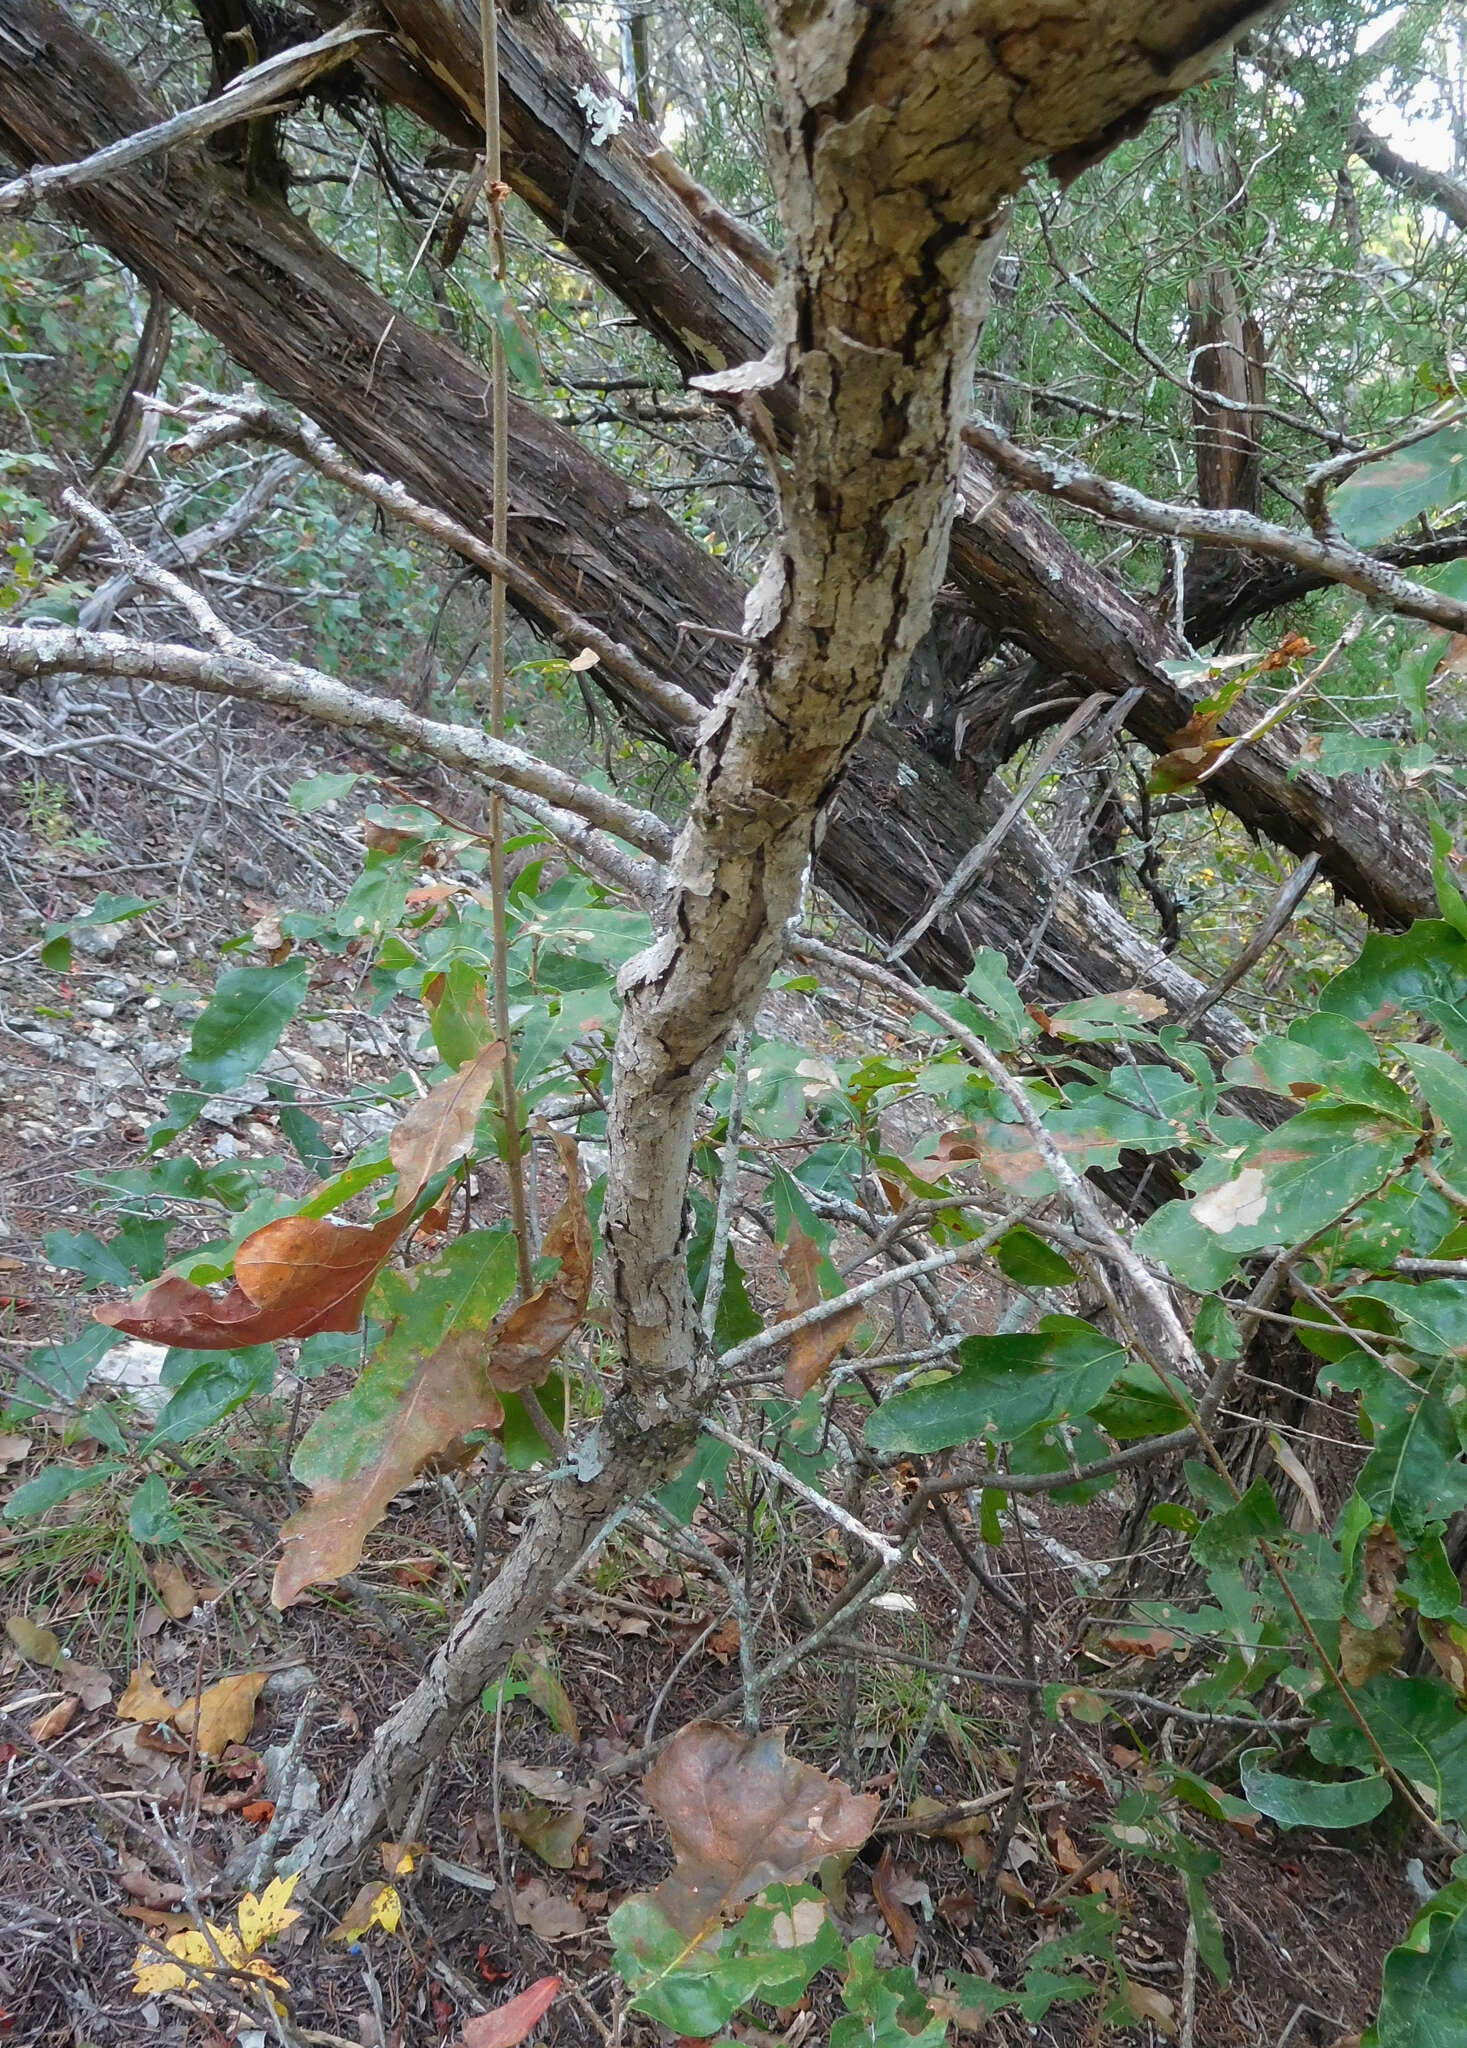 Image of bastard oak